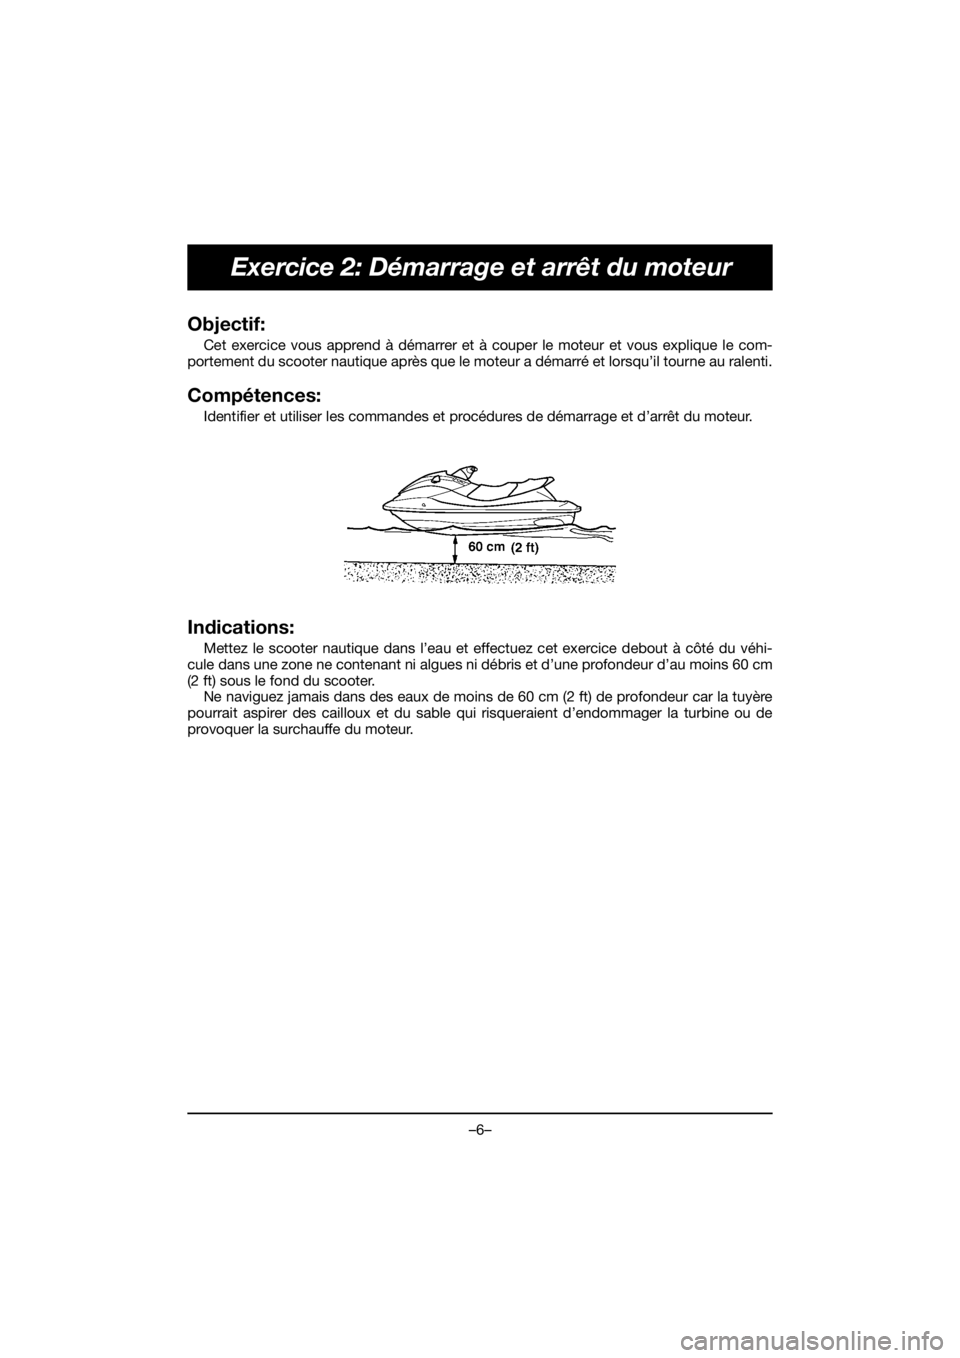 YAMAHA FJR1300 2019 Owners Guide –6–
Exercice 2: Démarrage et arrêt du moteur
Objectif: 
Cet exercice vous apprend à démarrer et à couper le moteur et vous explique le com-
portement du scooter nautique après que le moteur 